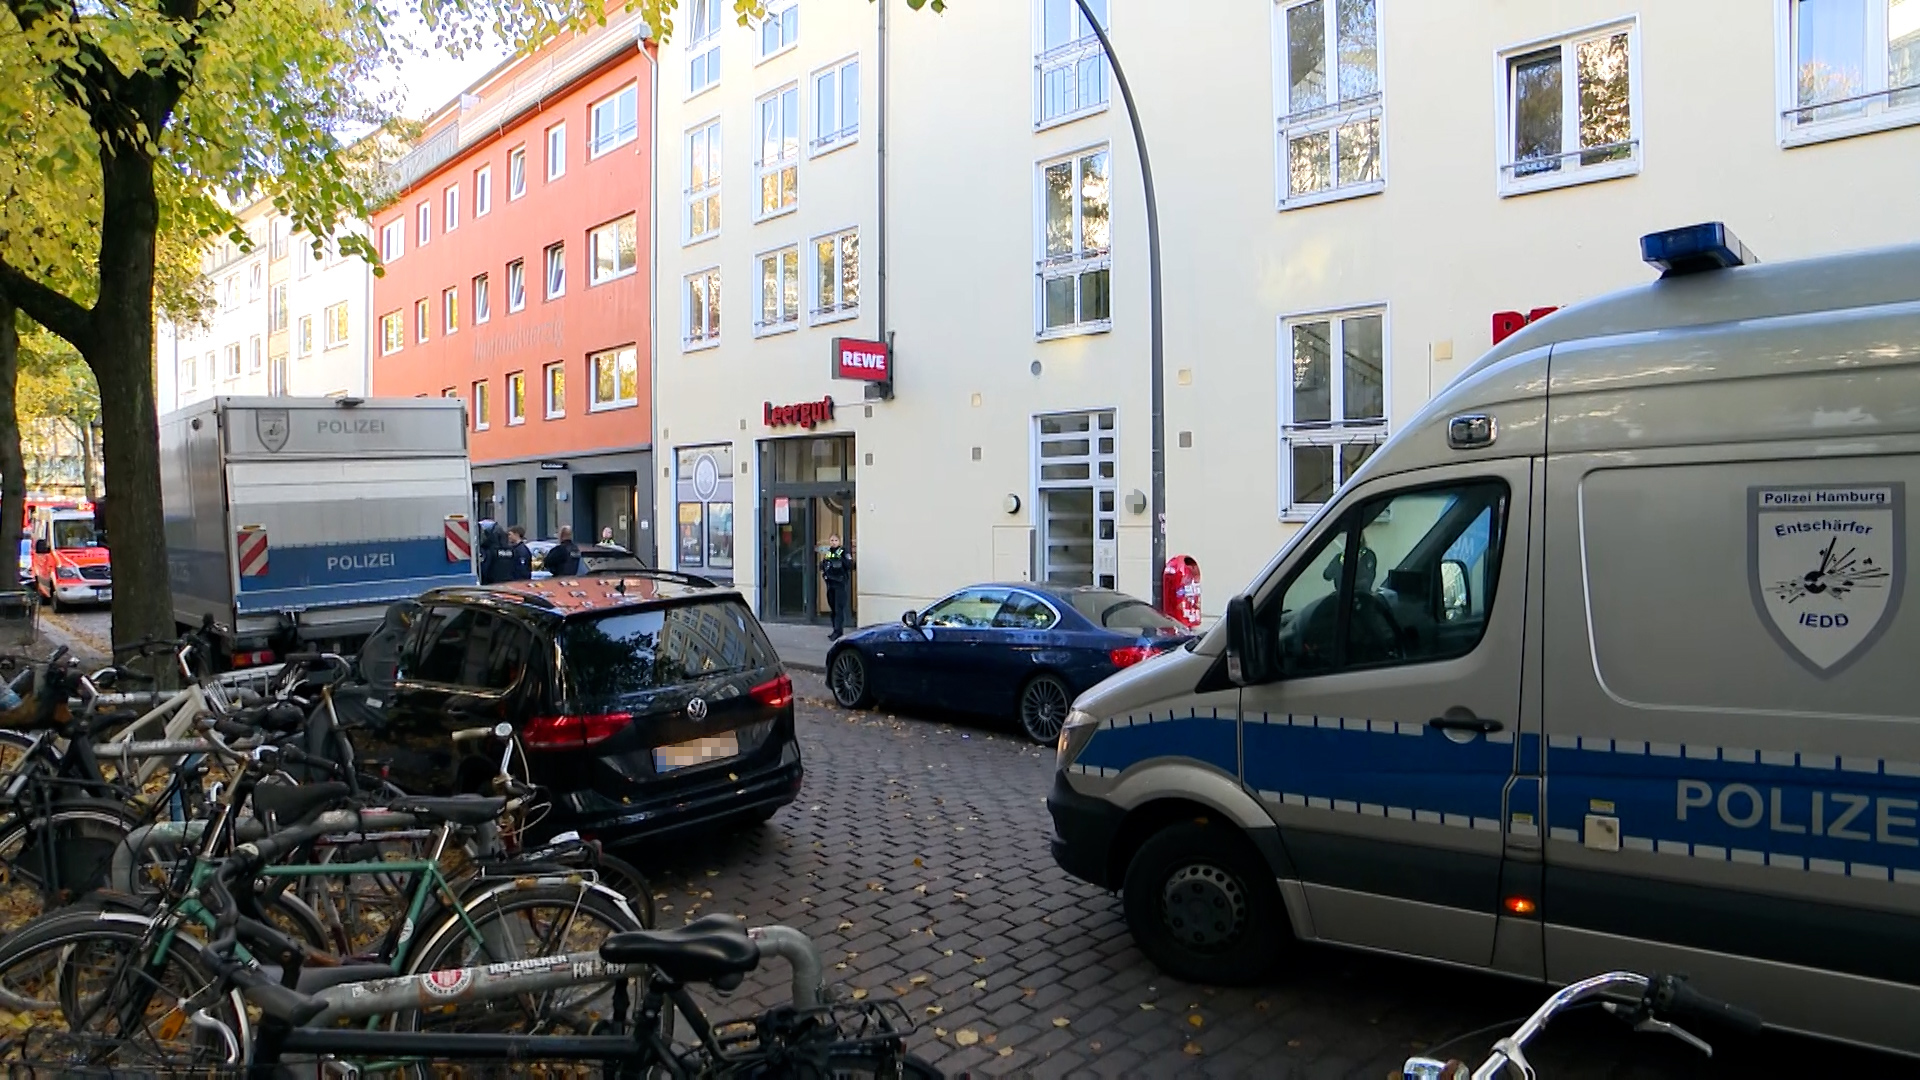 Die Polizei durchsuchte die Wohnung in der Neustadt. Auch ein Entschärfer war vor Ort.